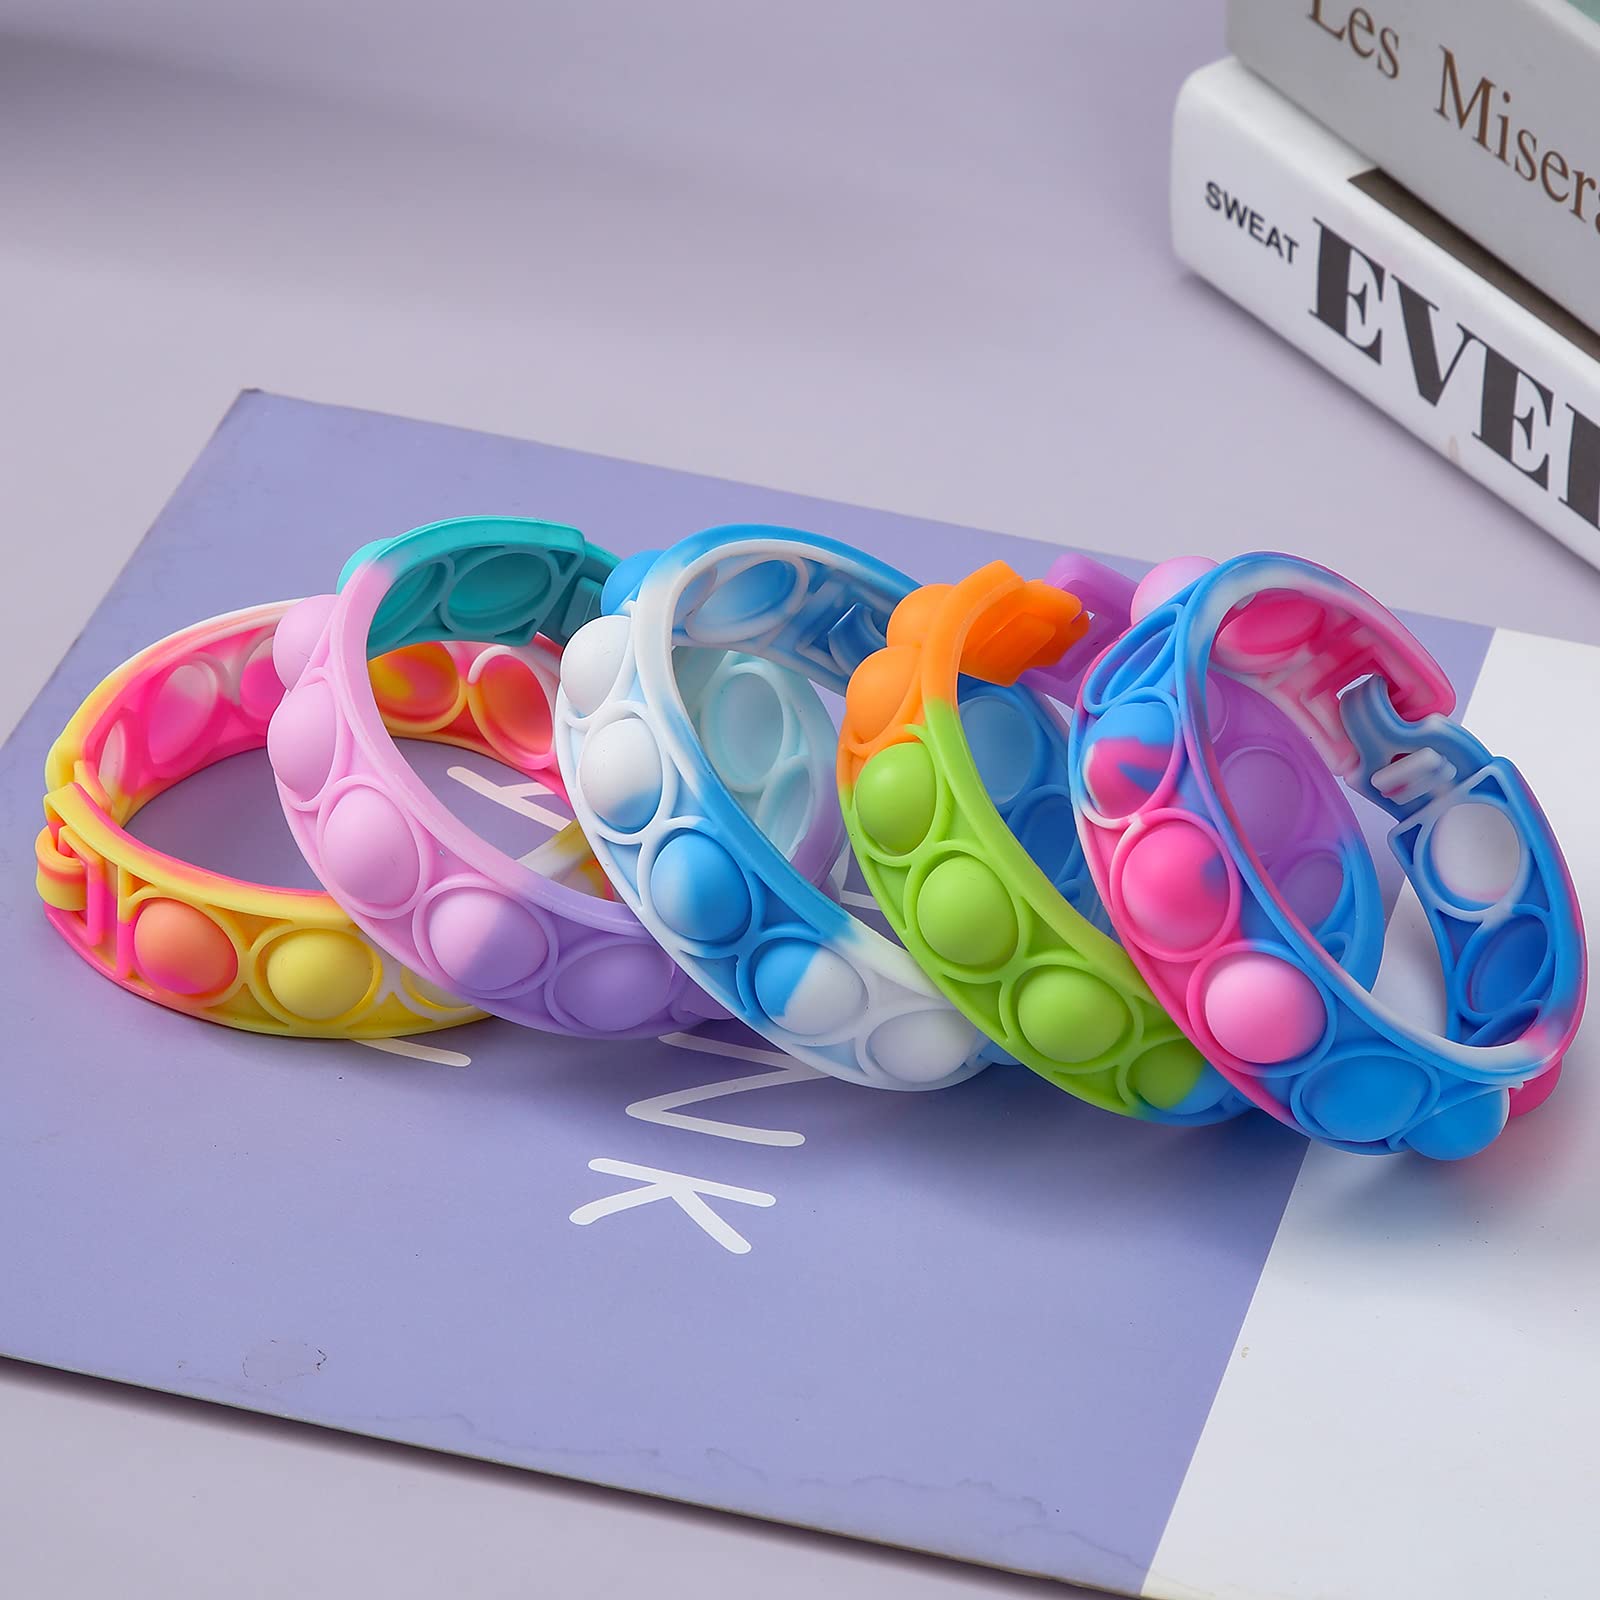 15 Pcs Multiplecolor Wristband Push Pop Bubble Sensory Fidget Silicone Bracelet Toy, Stress Relief Wristband Fidget Toys for Kids and Adults Anxiety Relief ADHD Autism Decompression